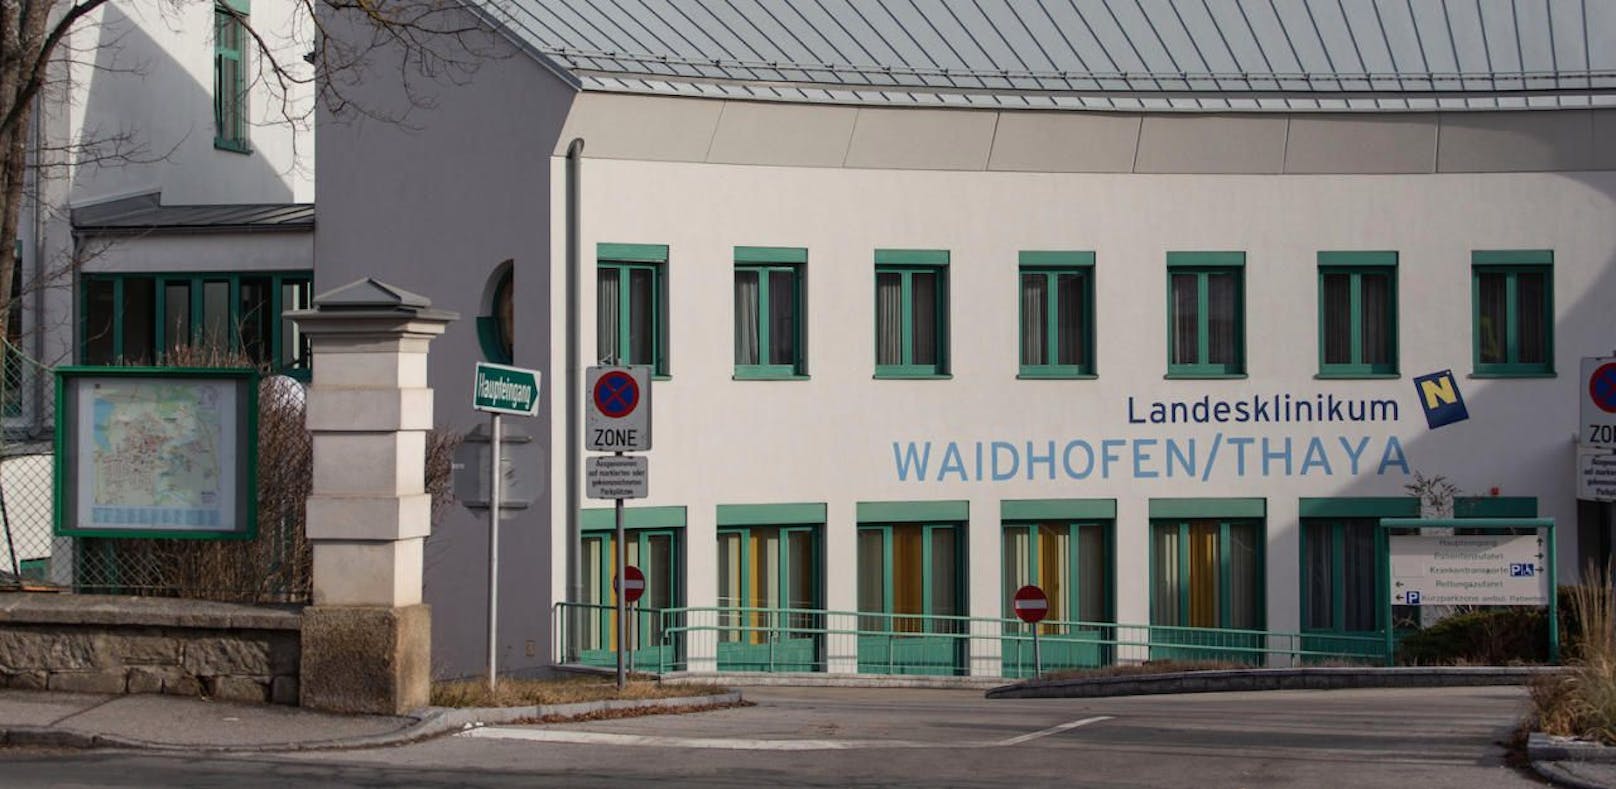 Das Spital in Waidhofen an der Thaya.